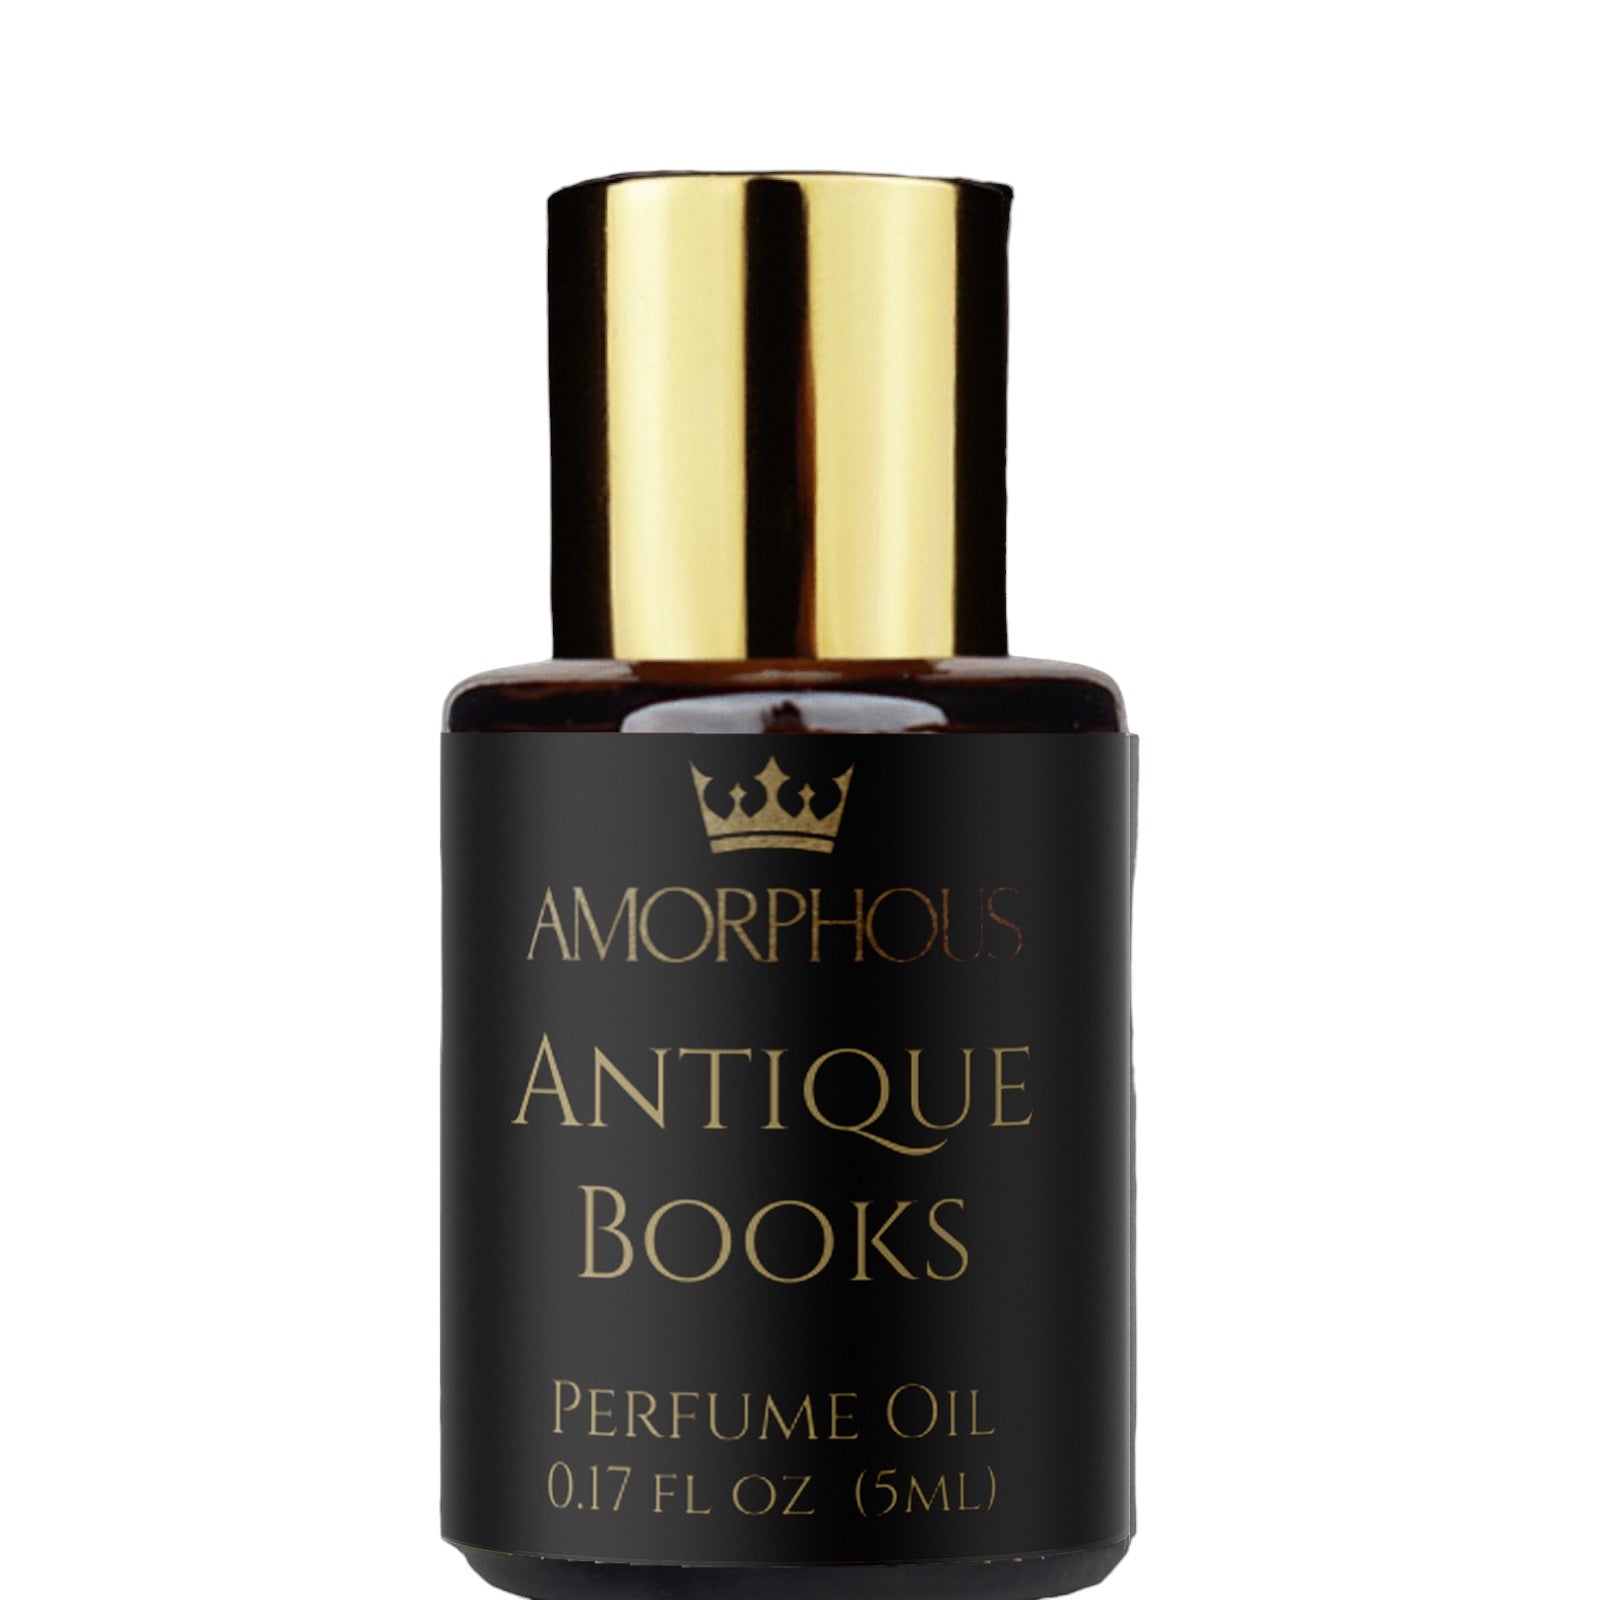 Antique books perfume